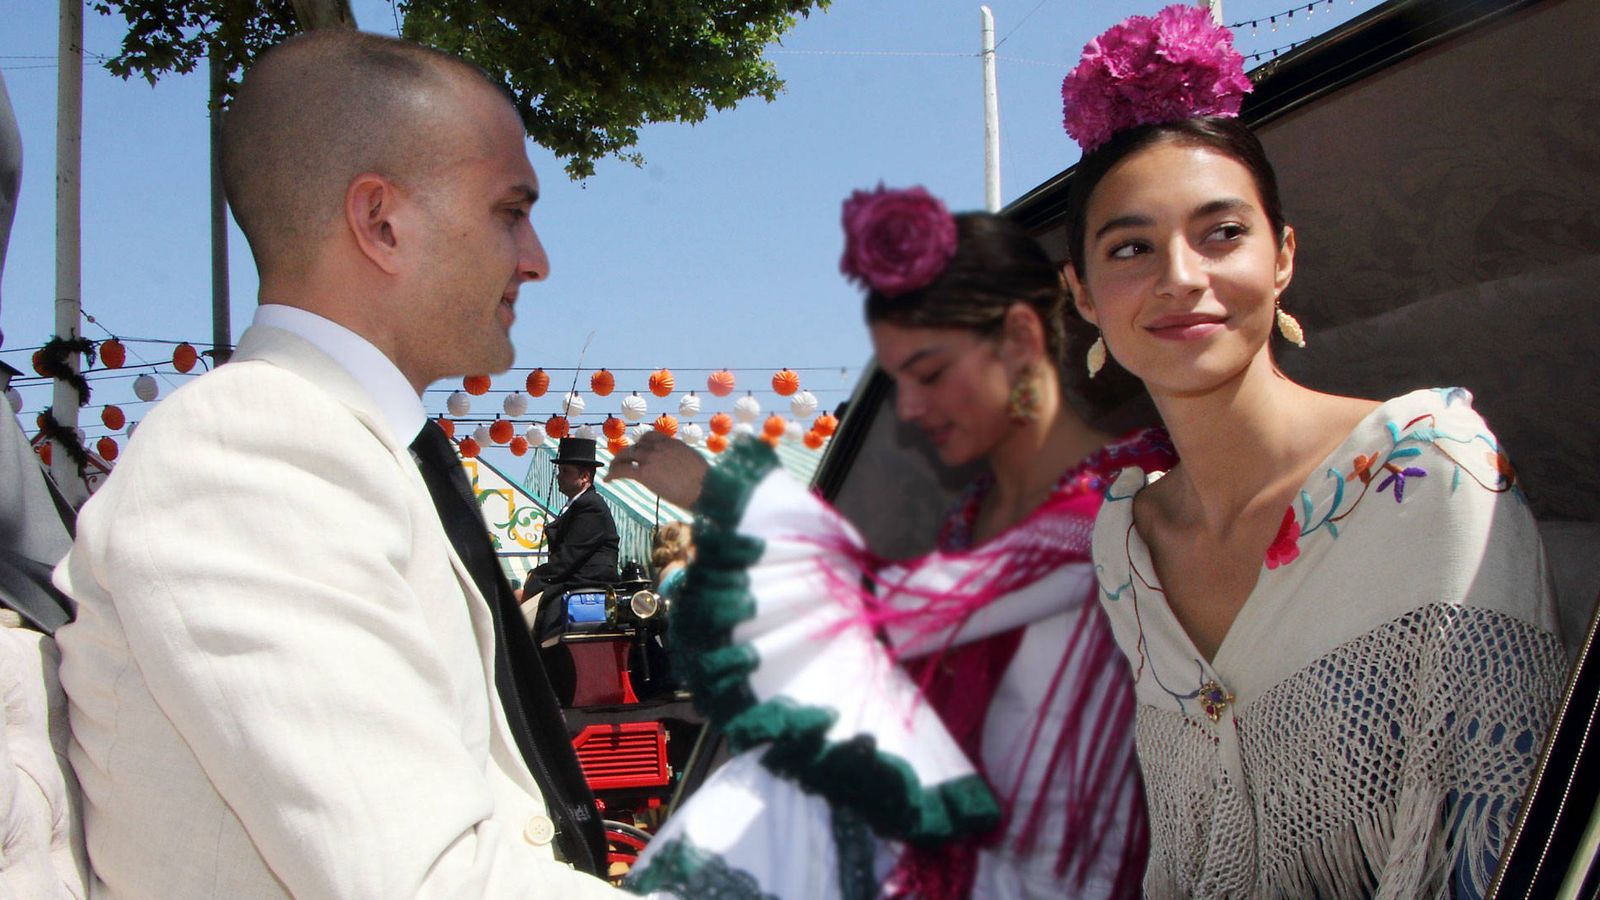 Foto: Rocío Crusset y Maggio Cipriani, en la Feria de Abril. (Lagencia Grosby)